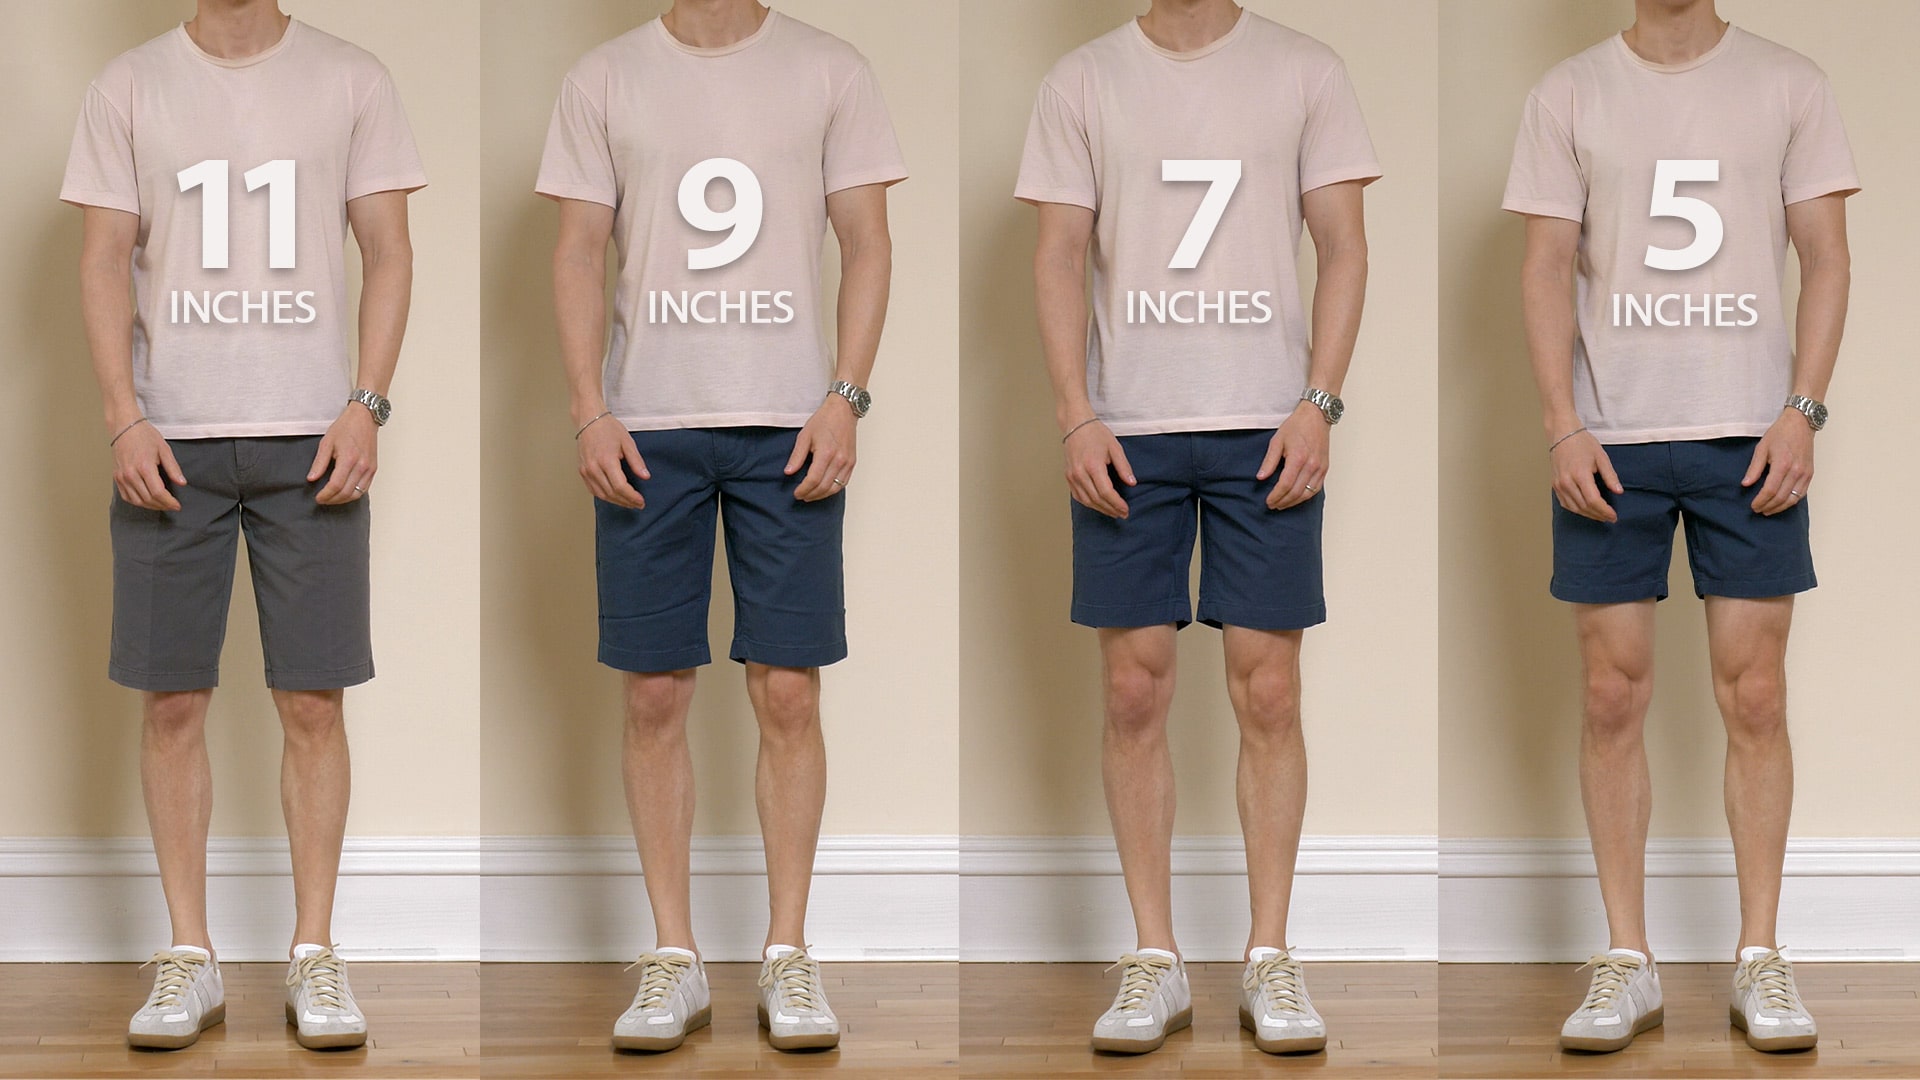 Shorts Length Comparison 